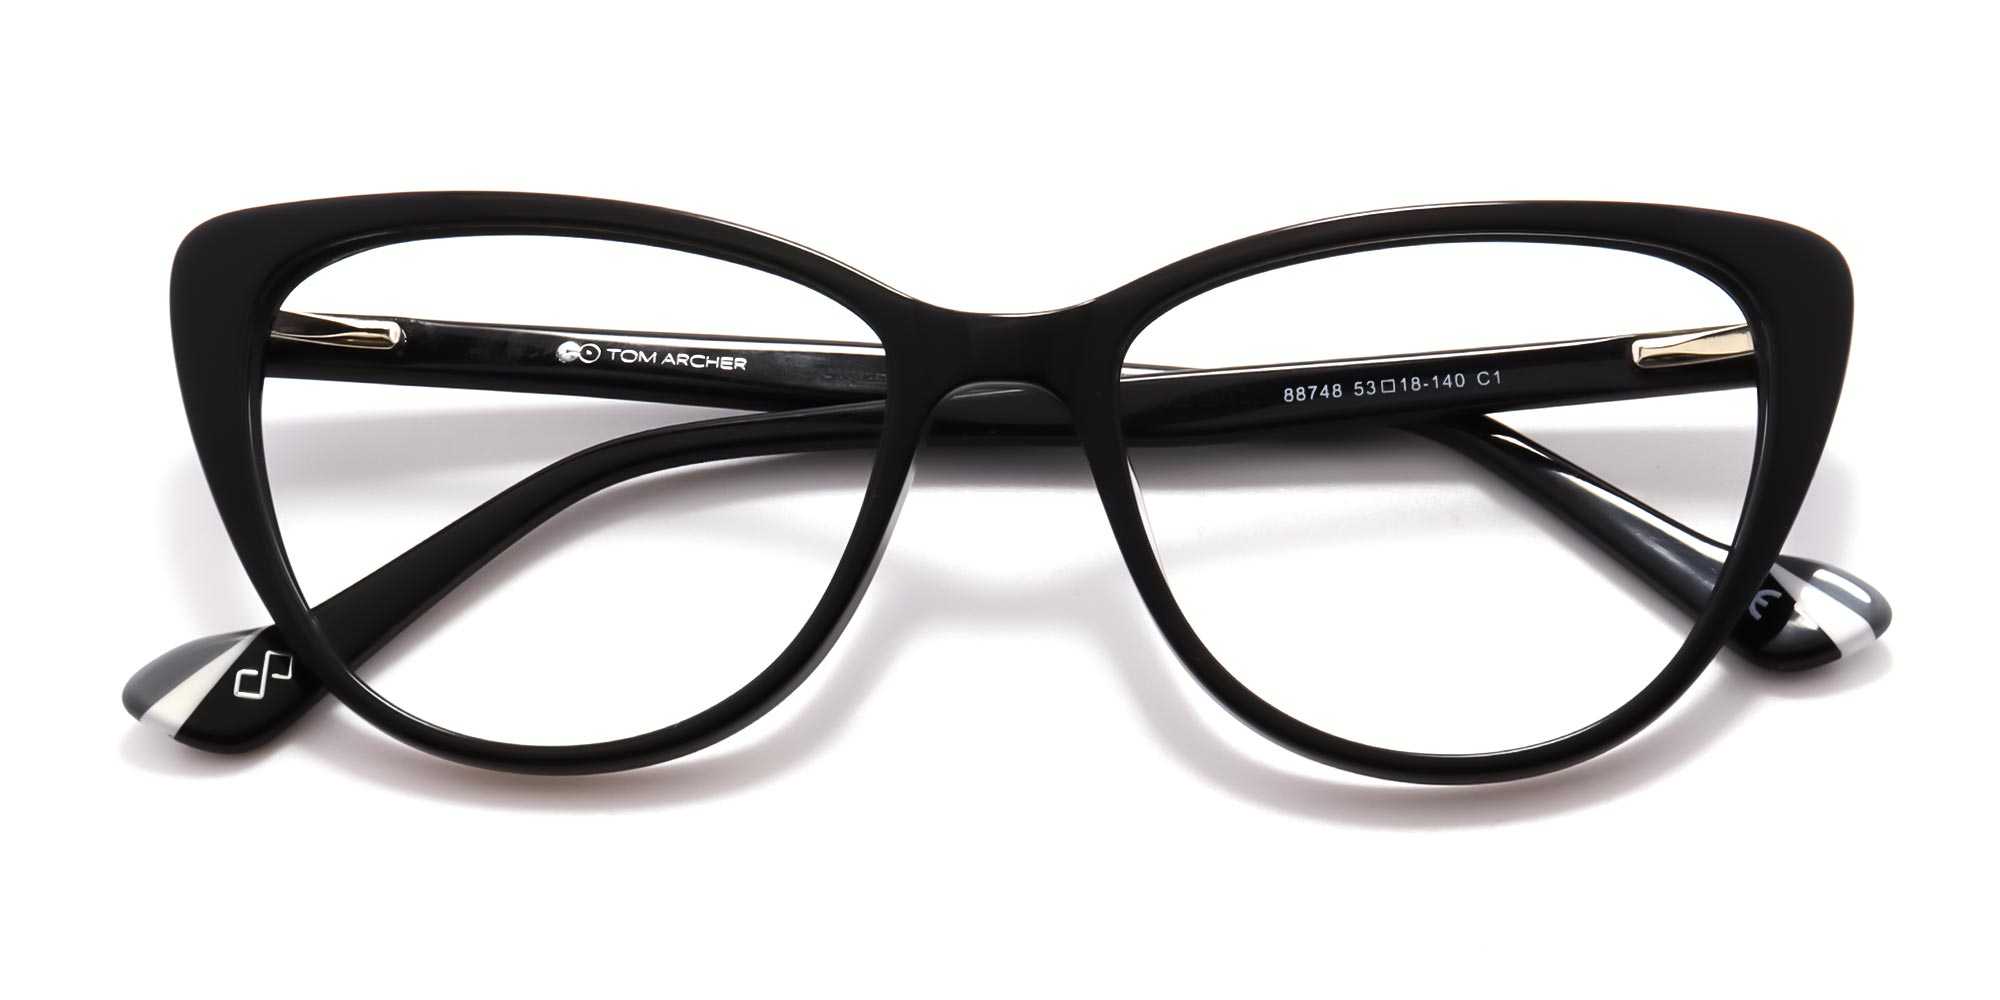 Black Cat Eye Glasses Frames-1